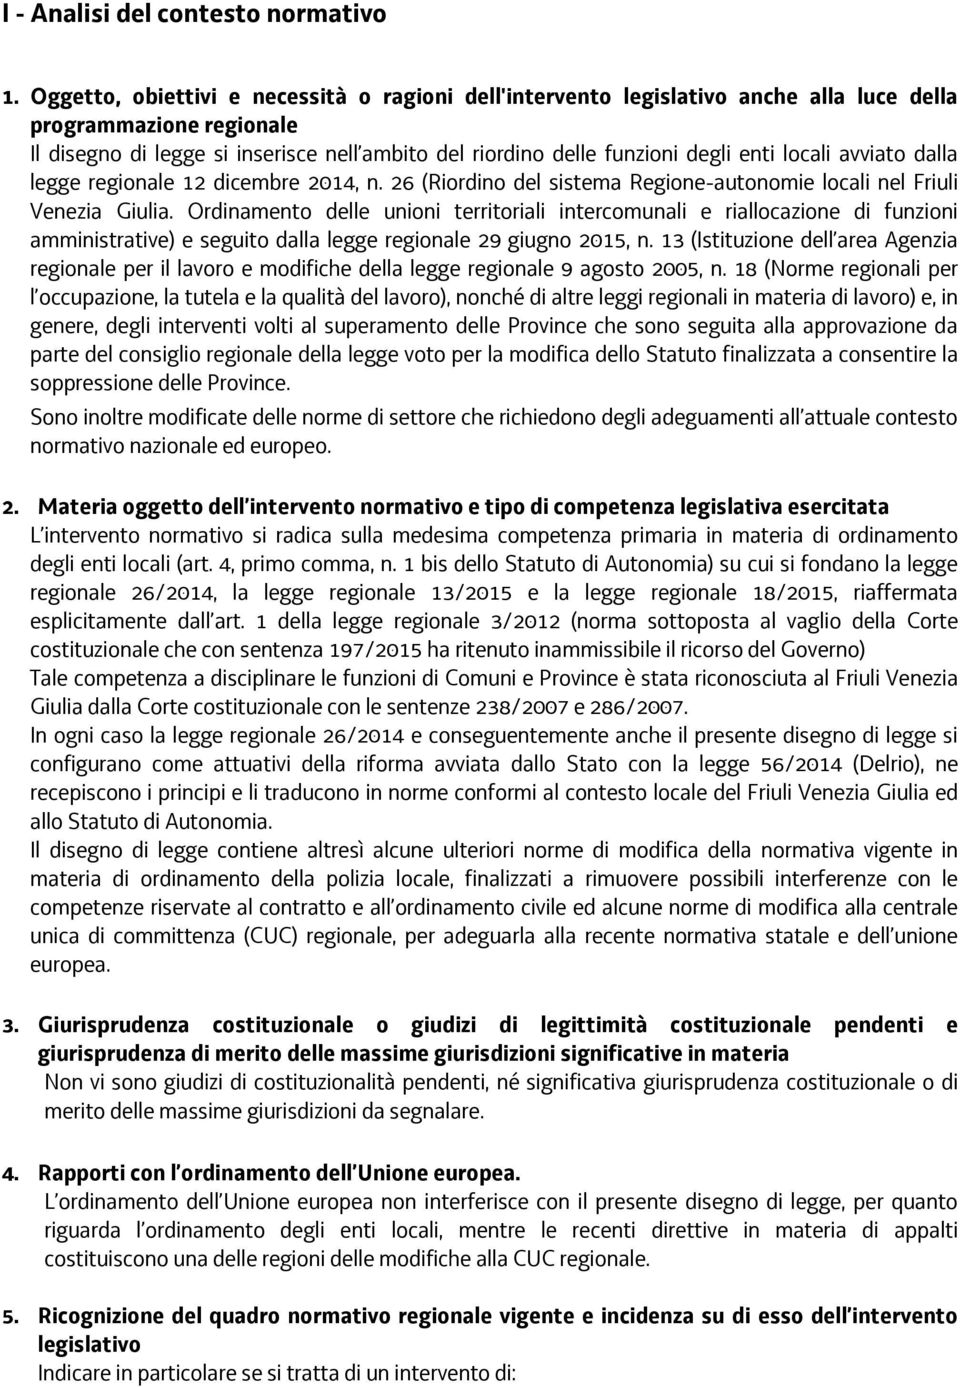 locali avviato dalla legge regionale 12 dicembre 2014, n. 26 (Riordino del sistema Regione-autonomie locali nel Friuli Venezia Giulia.